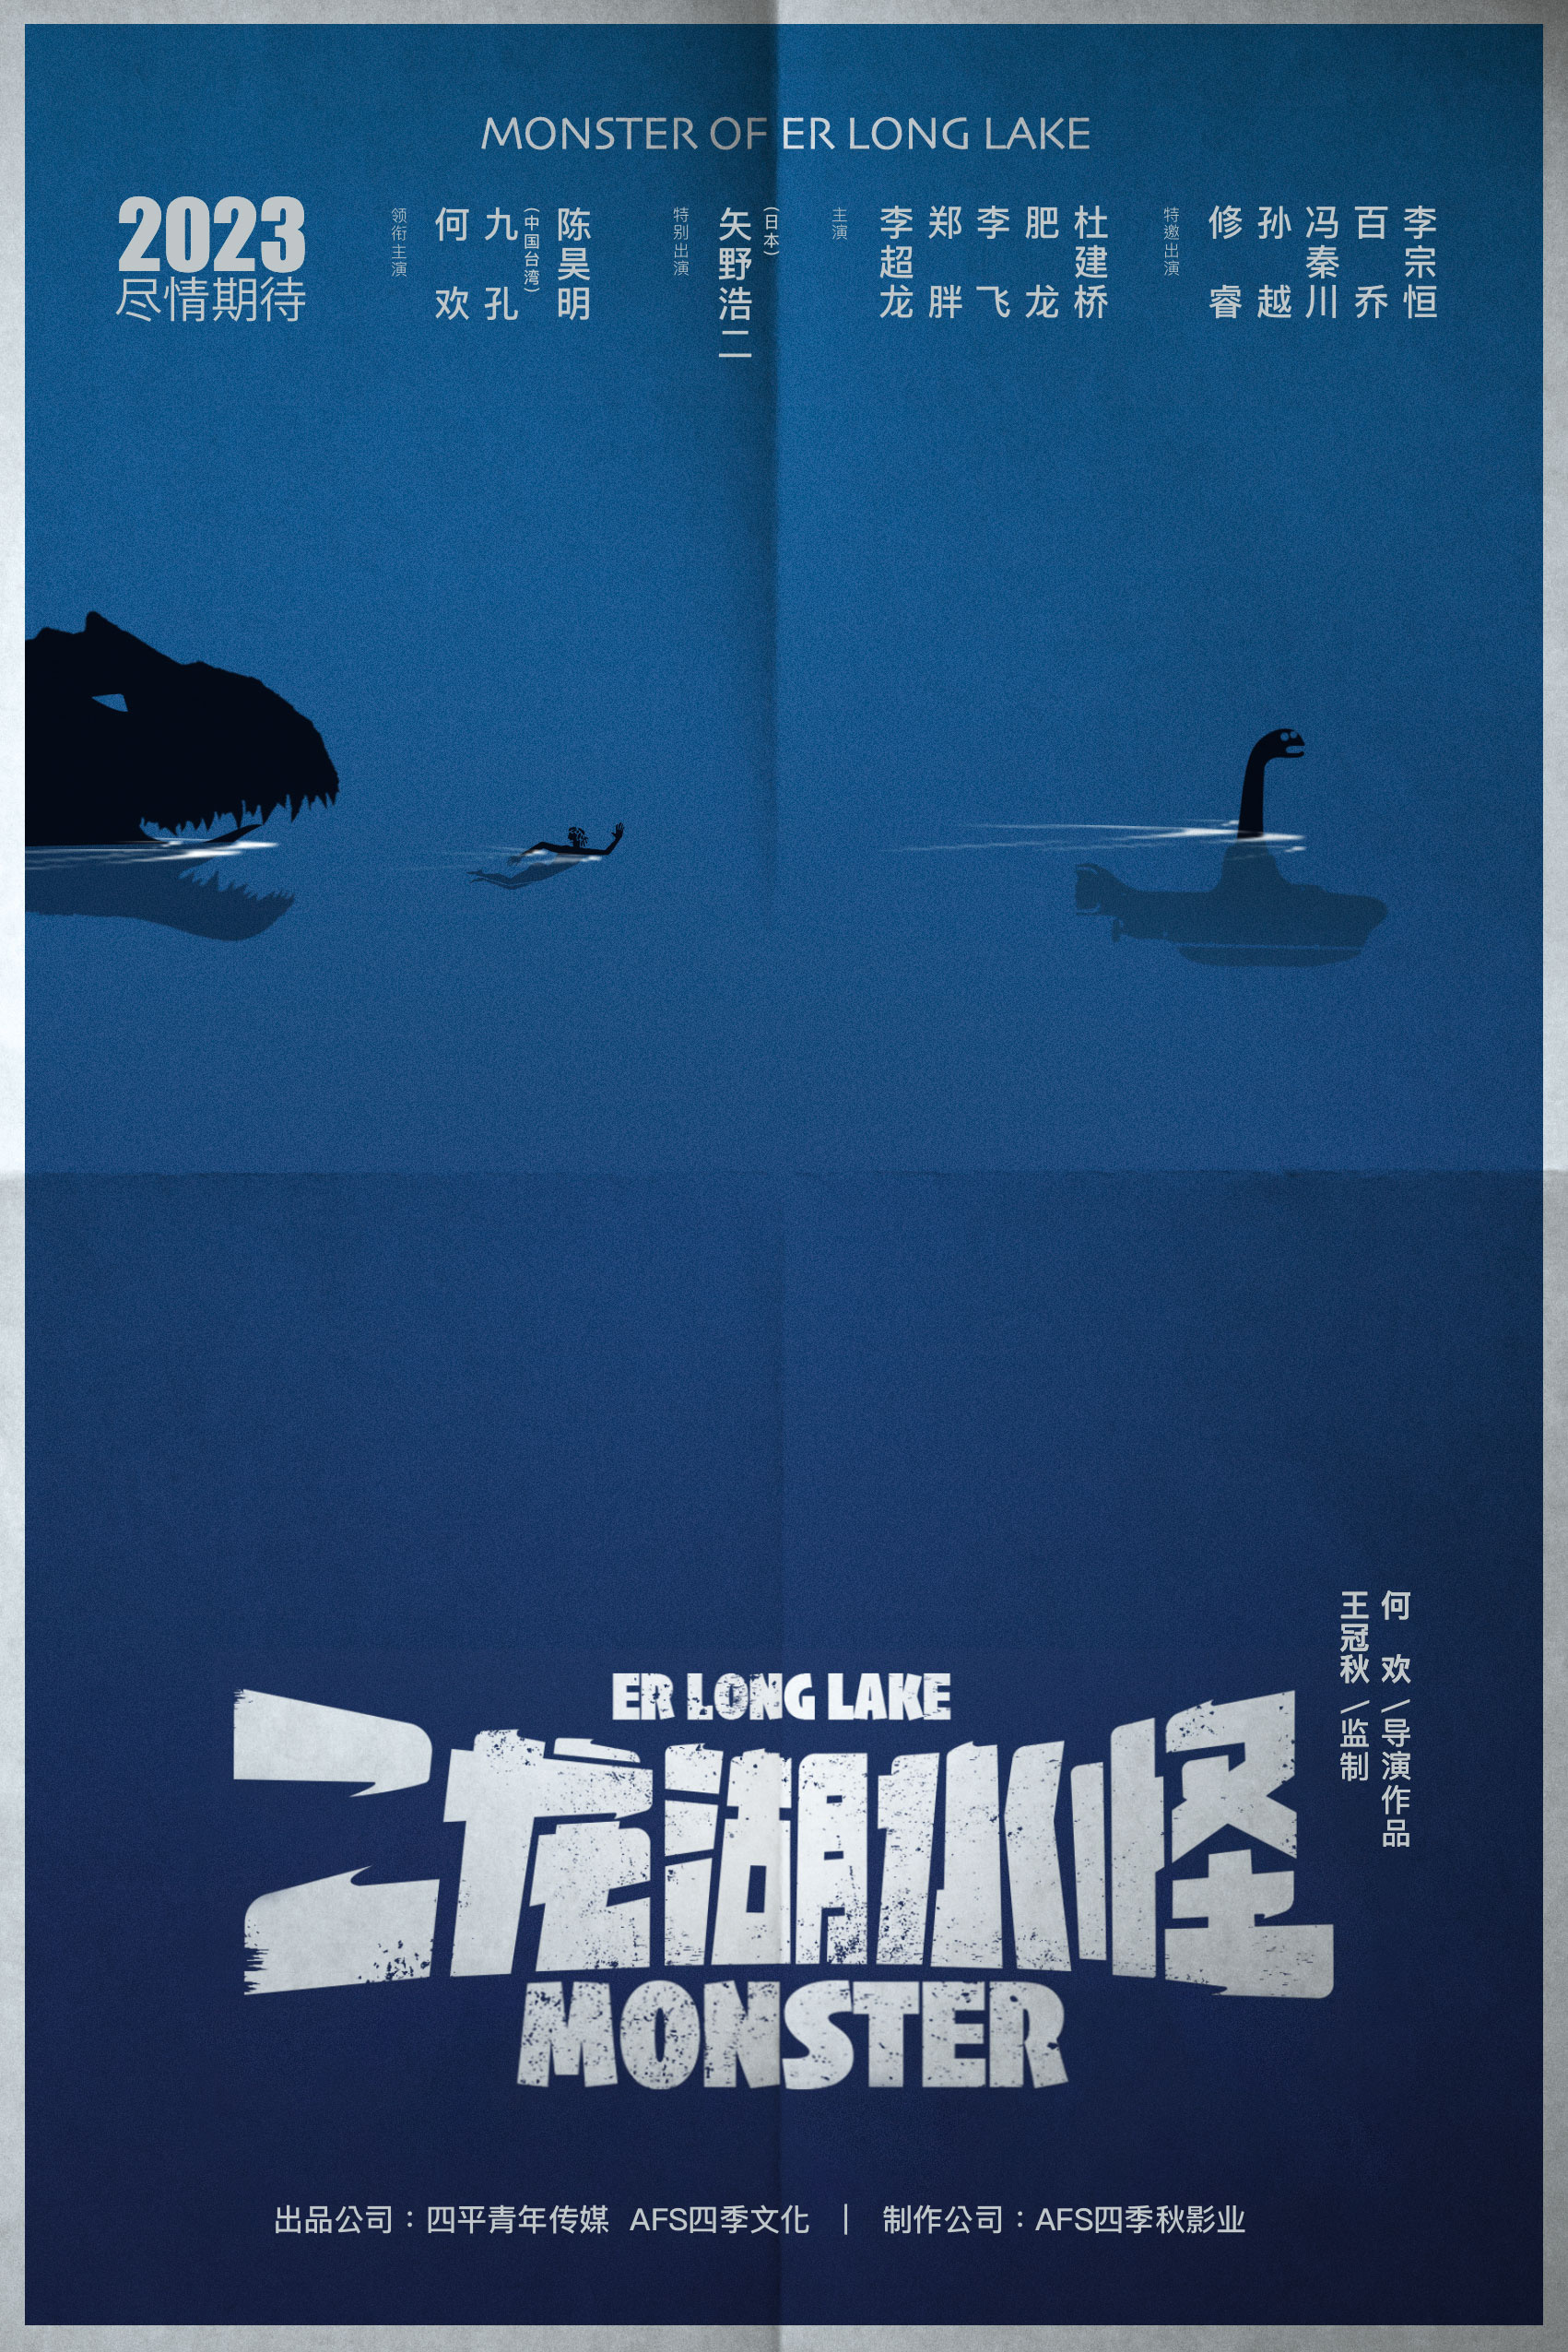 《二龙湖水怪》开机发布概念海报 九孔陈昊明主演(图2)